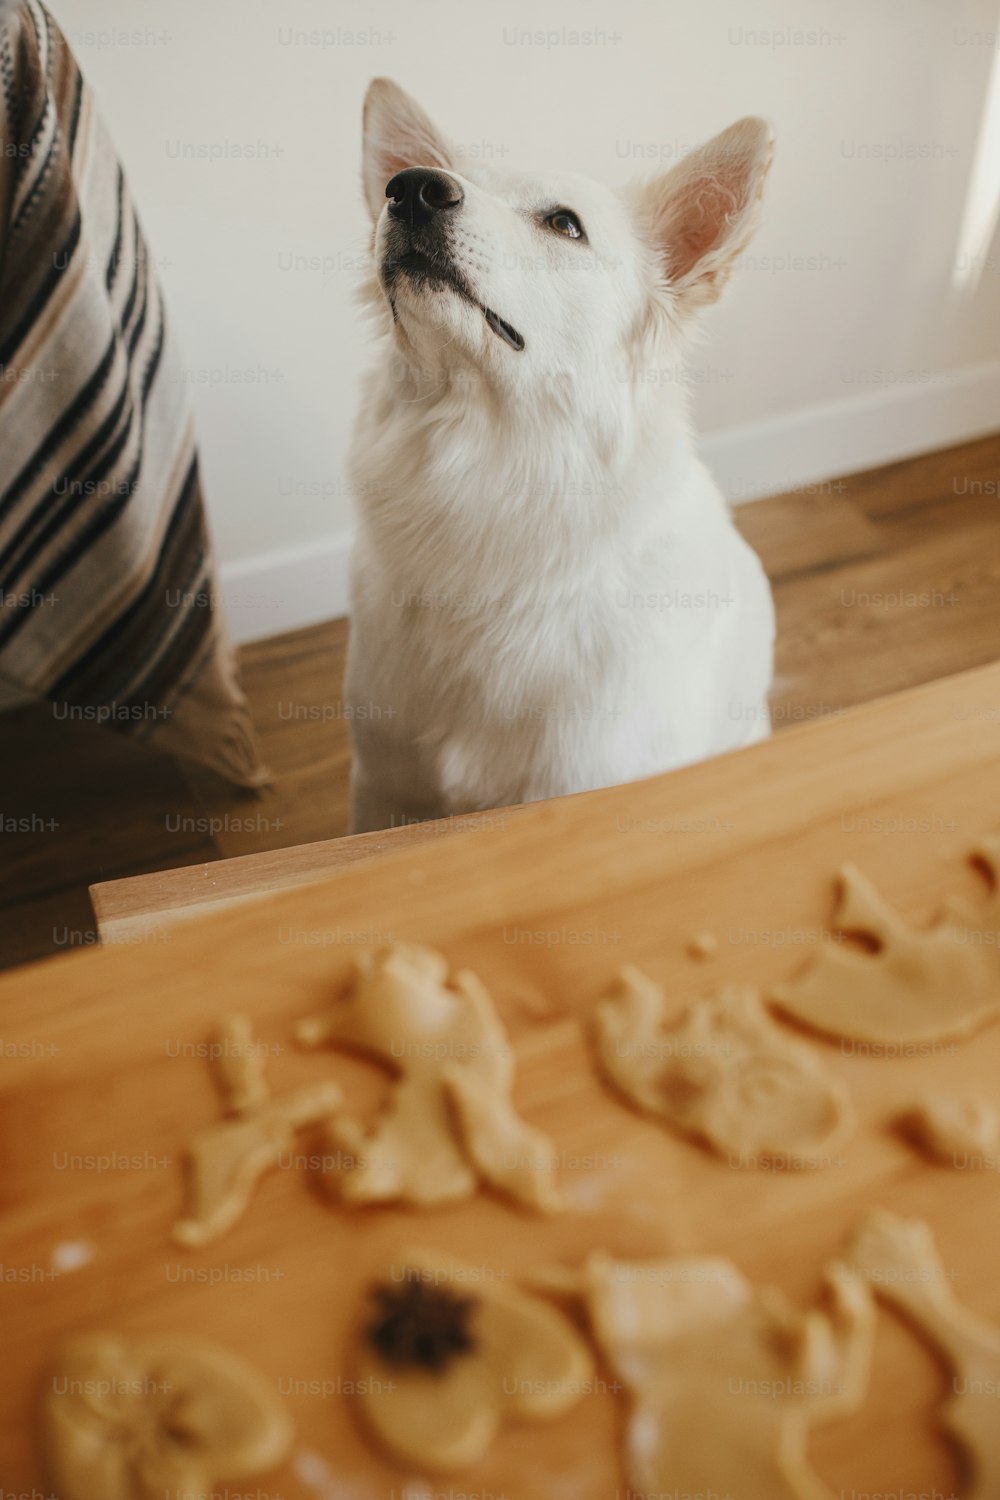 Simpatico cane bianco seduto all'impasto dei biscotti di pan di zenzero sul tavolo di legno in una stanza moderna. Simpatico pastore svizzero curioso alla pecorina e biscotti di Natale. Momento autentico. Animali domestici e preparazione per le vacanze